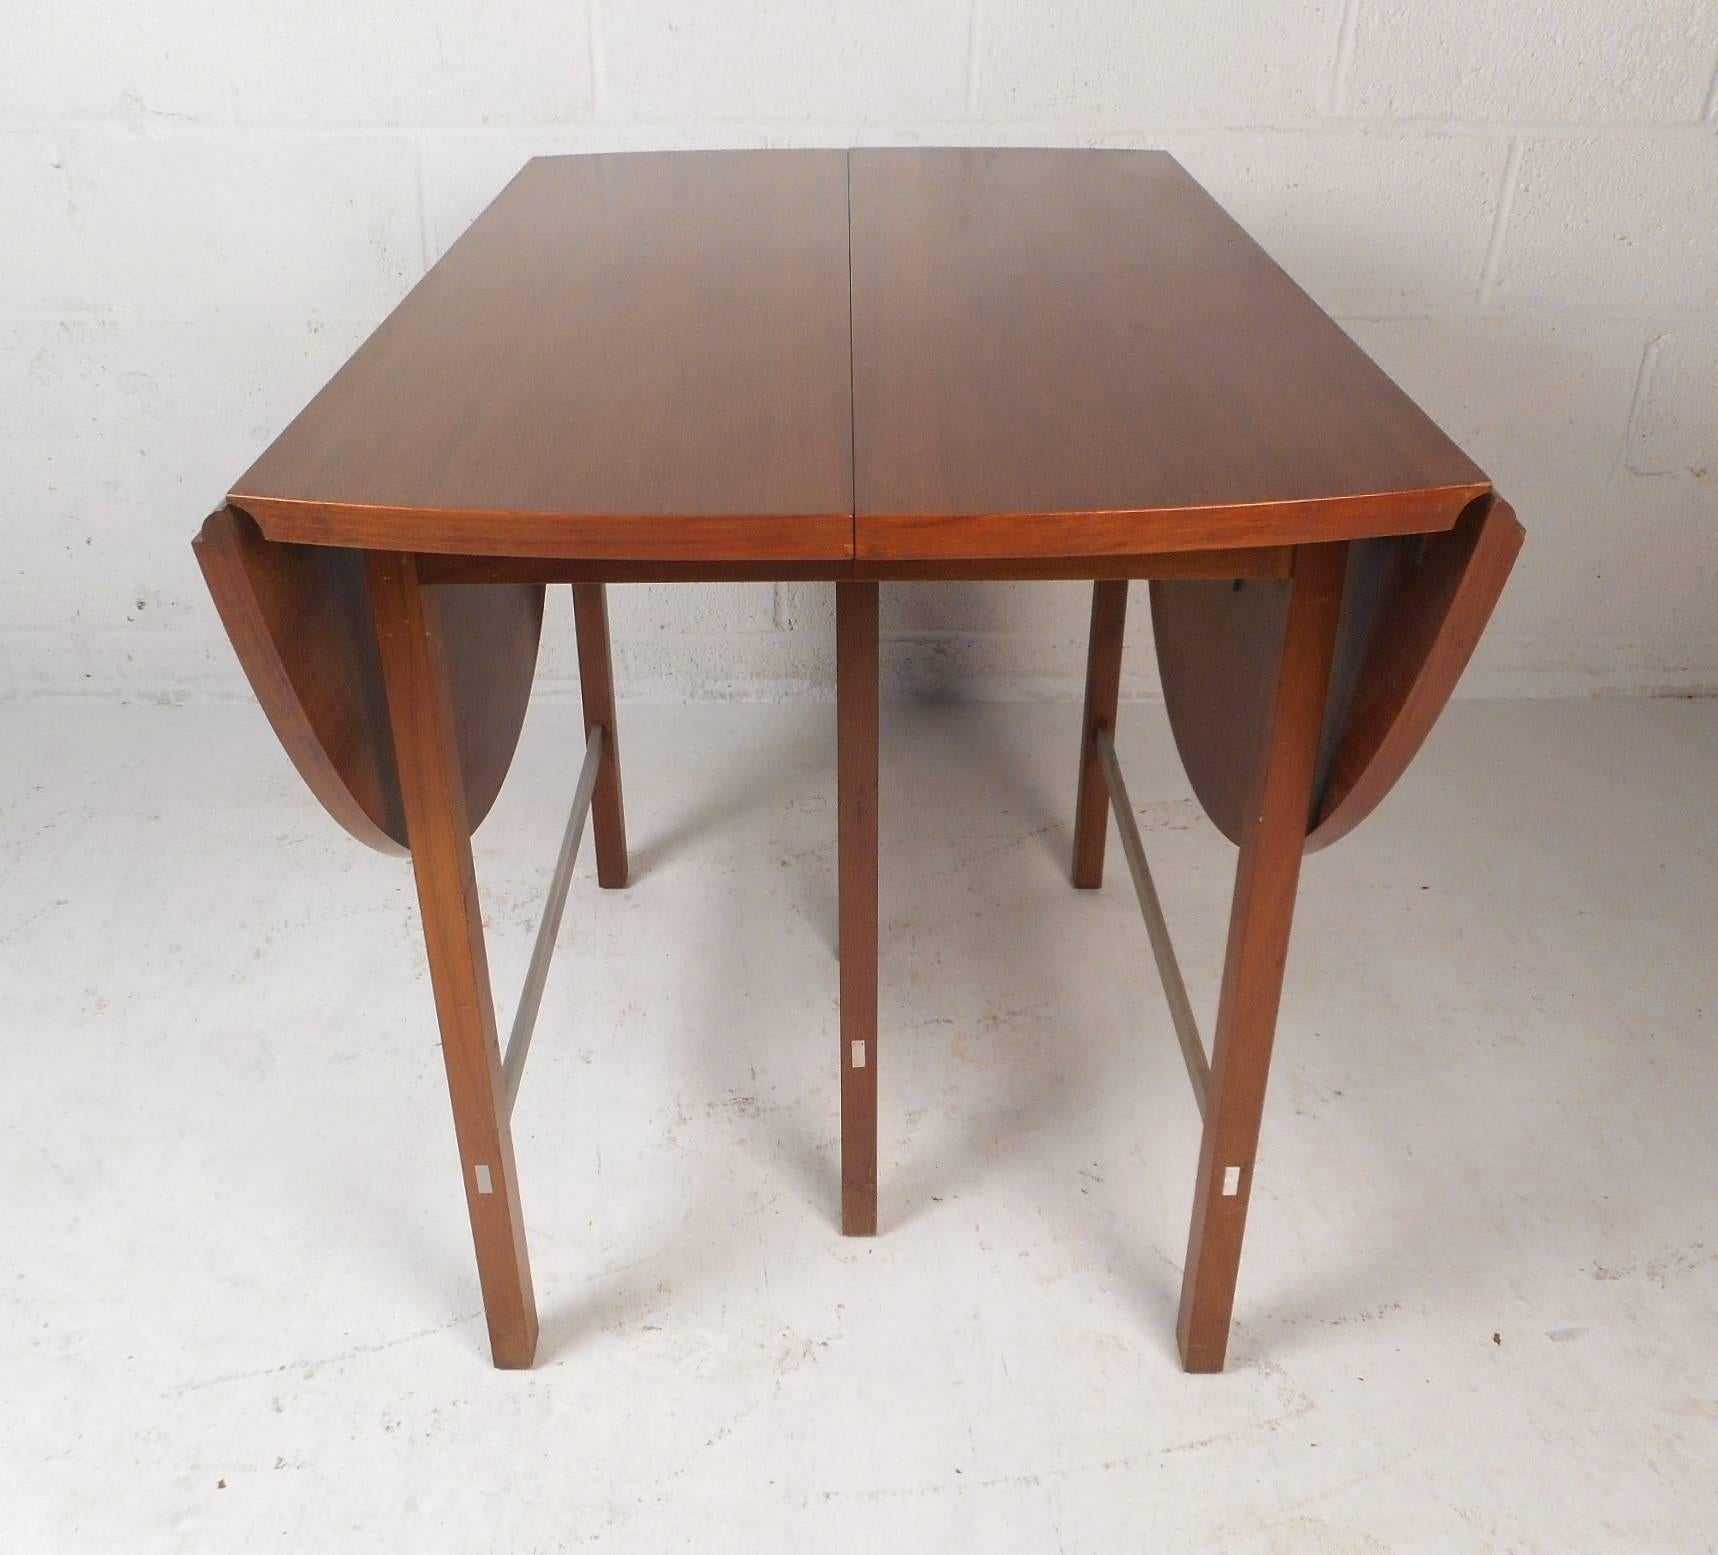 Dieser wunderschöne moderne Esstisch im Vintage-Stil verfügt über ein Klappdesign mit drei zusätzlichen Blättern, die es dem Tisch ermöglichen, von 25,75 Zoll Breite bis zu 90 Zoll Breite zu gehen. Das schlanke Design hat einzigartige